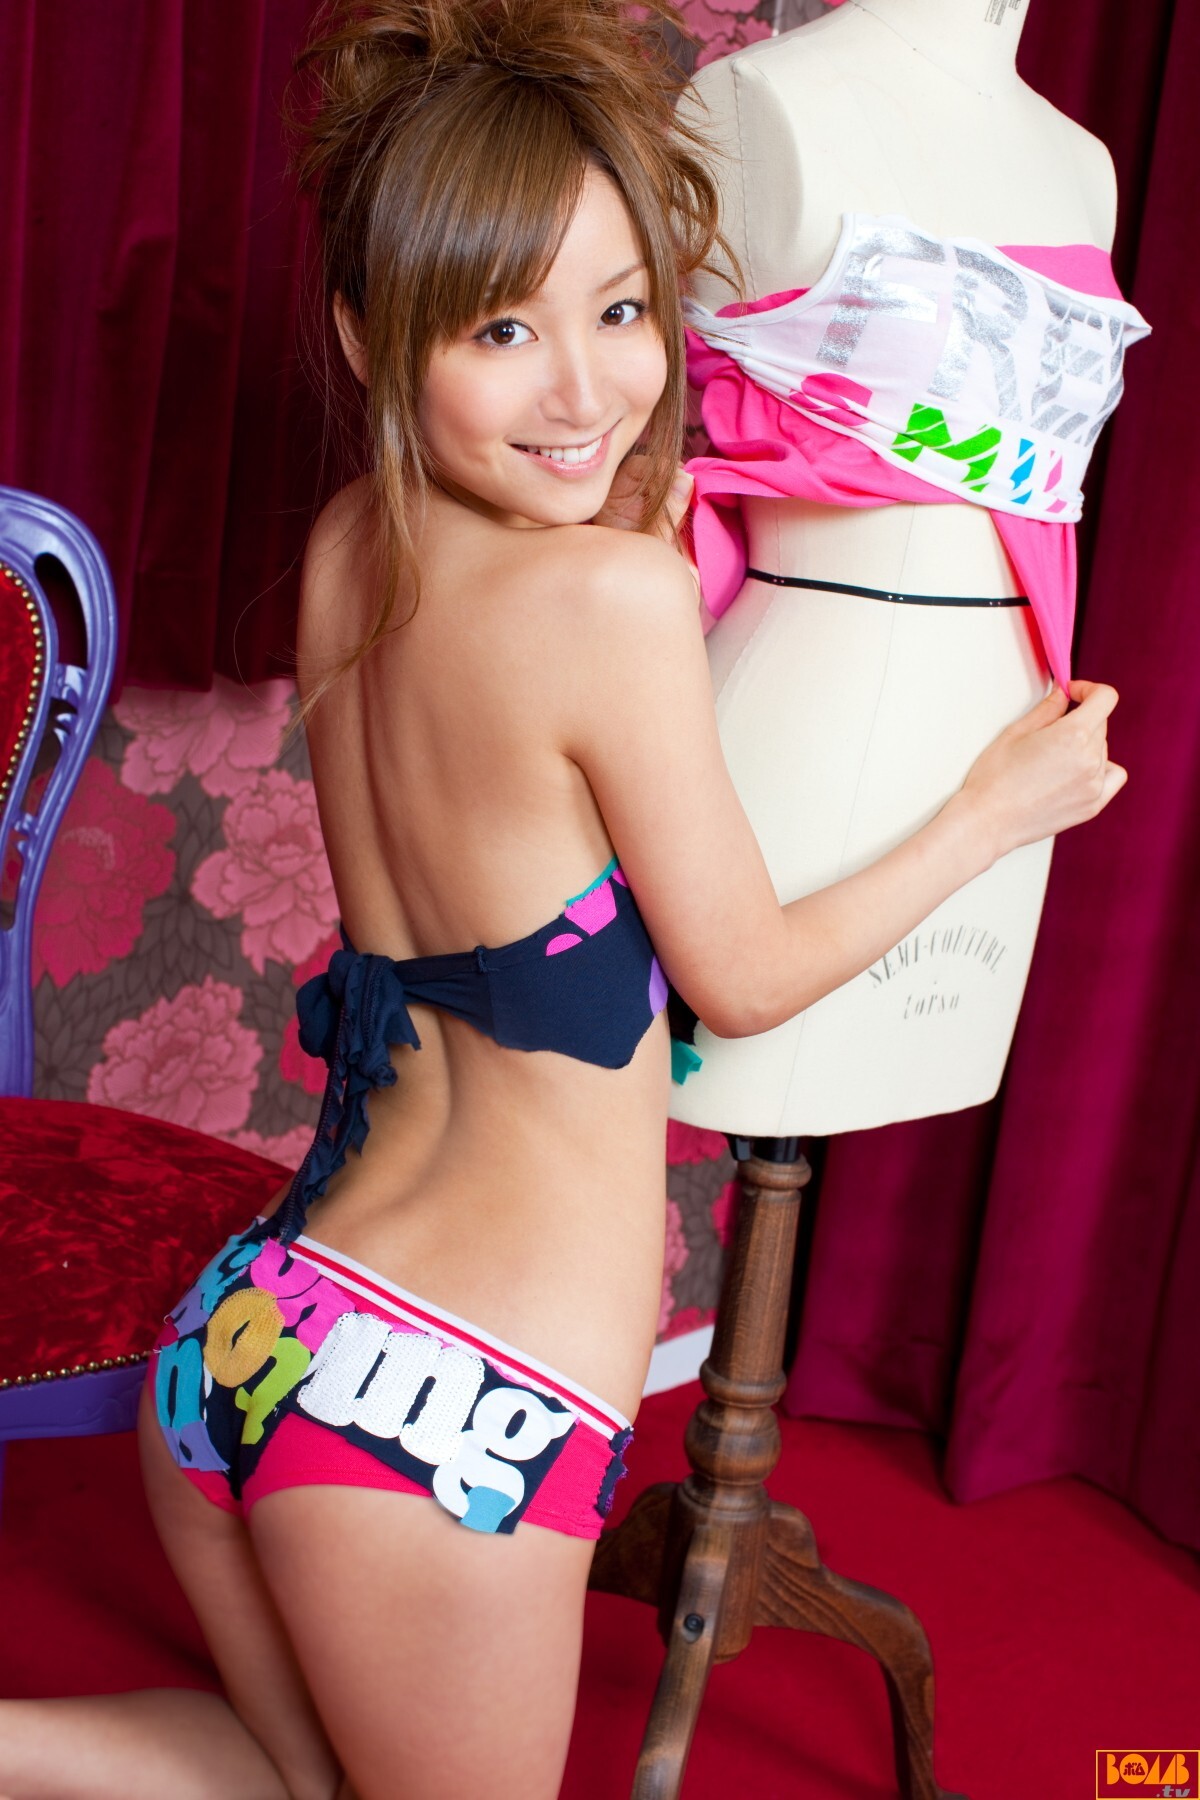 Aya kiguchi[ Bomb.tv ]Sexy AV Actress